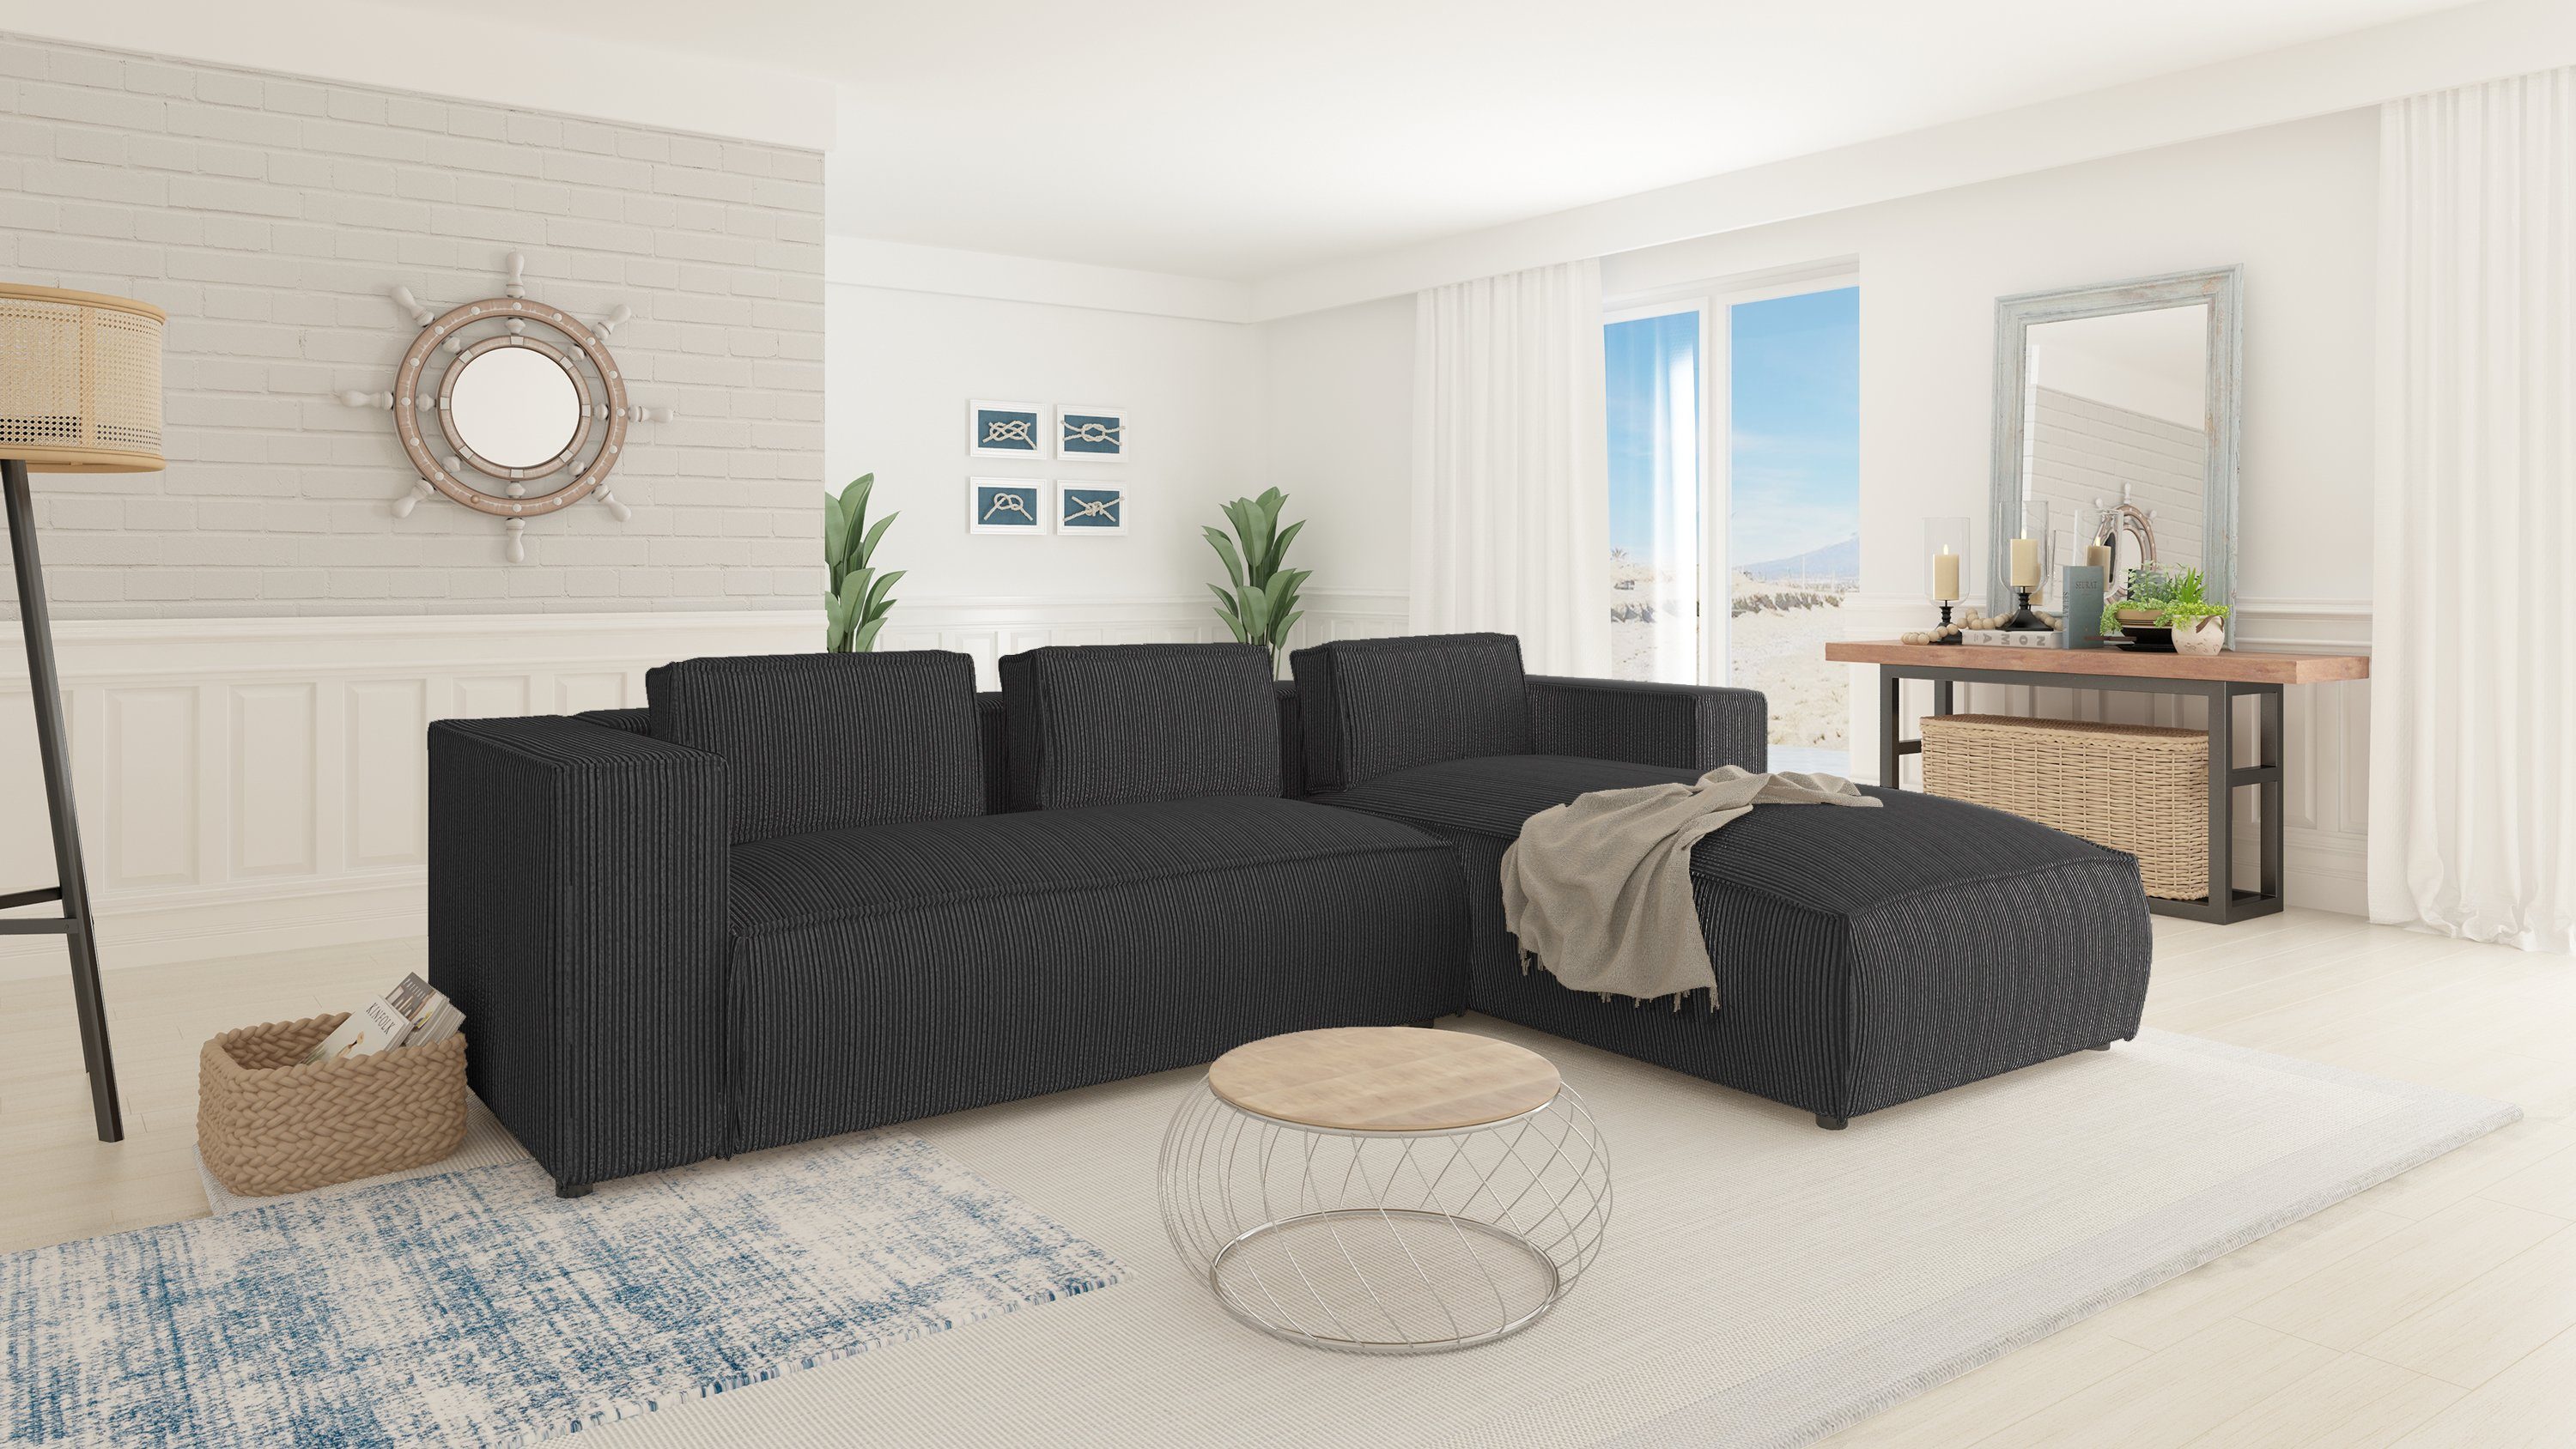 bestellbar Teile, oder mit S-Style Moderner mane links rechts Grau Wellenfederung Ecksofa Optik, Möbel in 2 Renne,